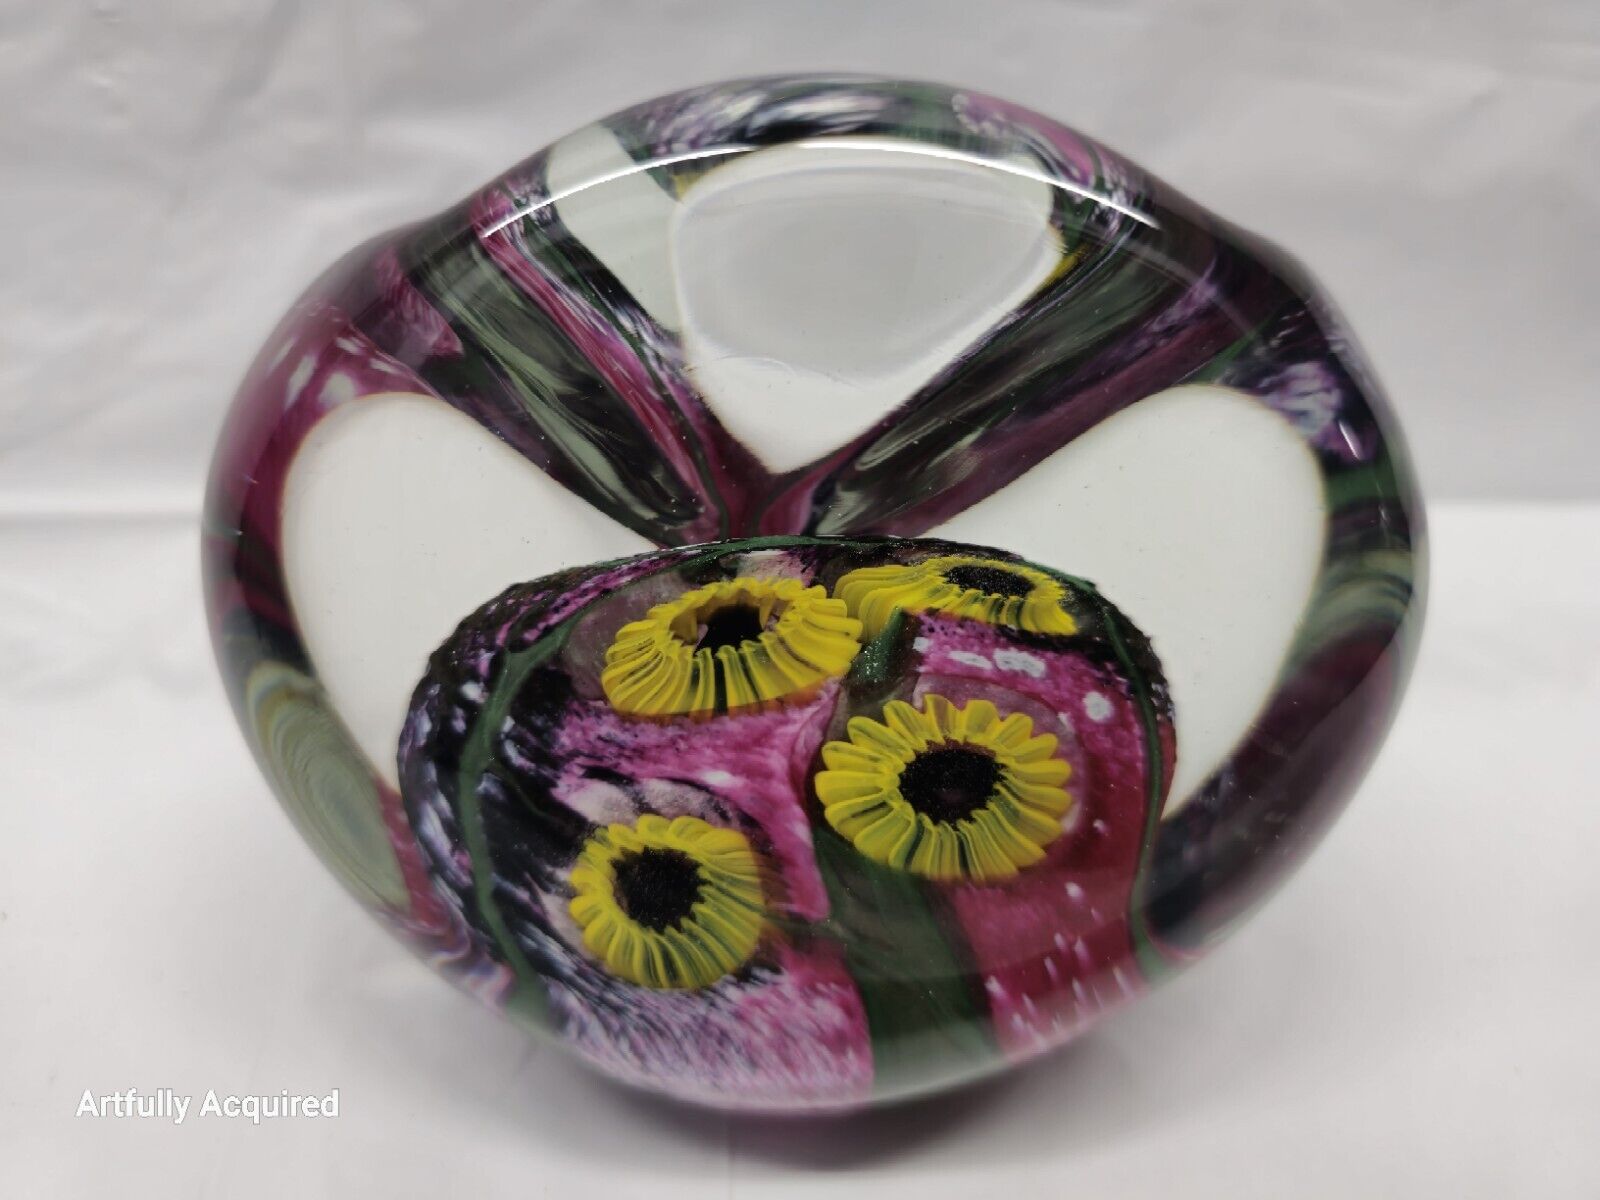 Robert Eickholt Art Glass Paperweight Flower Design - Signed 1995 4 Inch